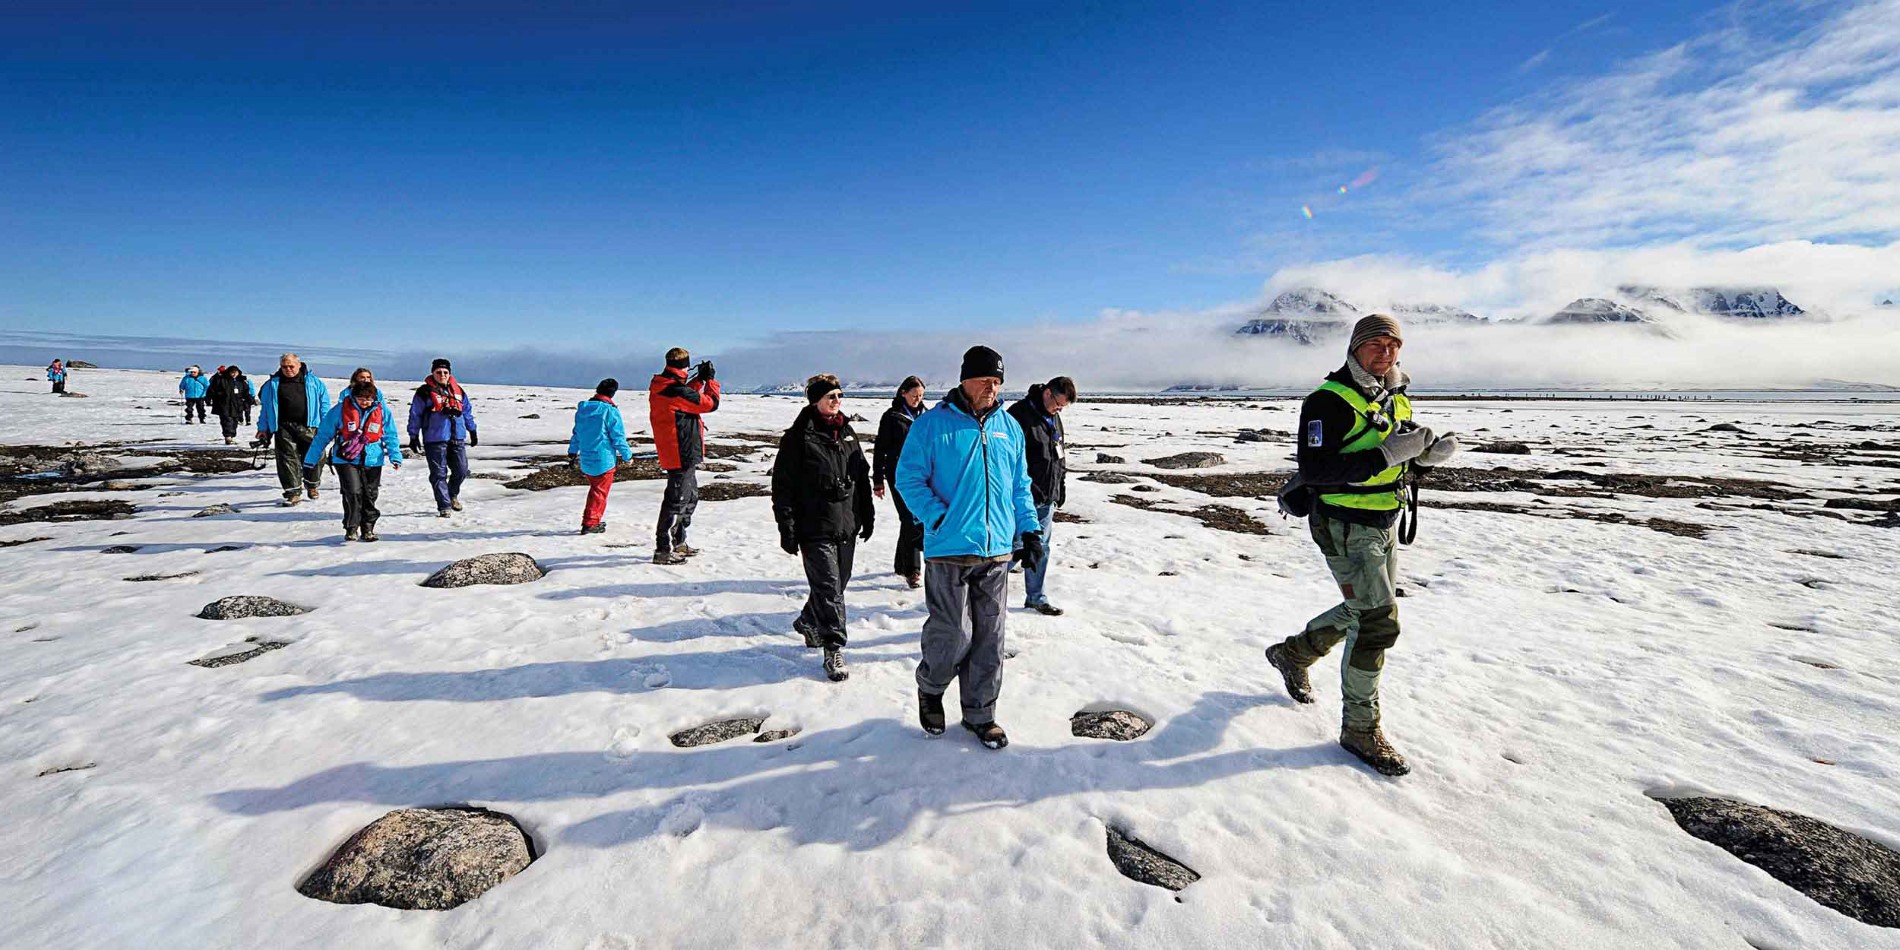 Lassen Sie sich von Ihrem Expeditionsführer durch die hohe arktische Tundra führen